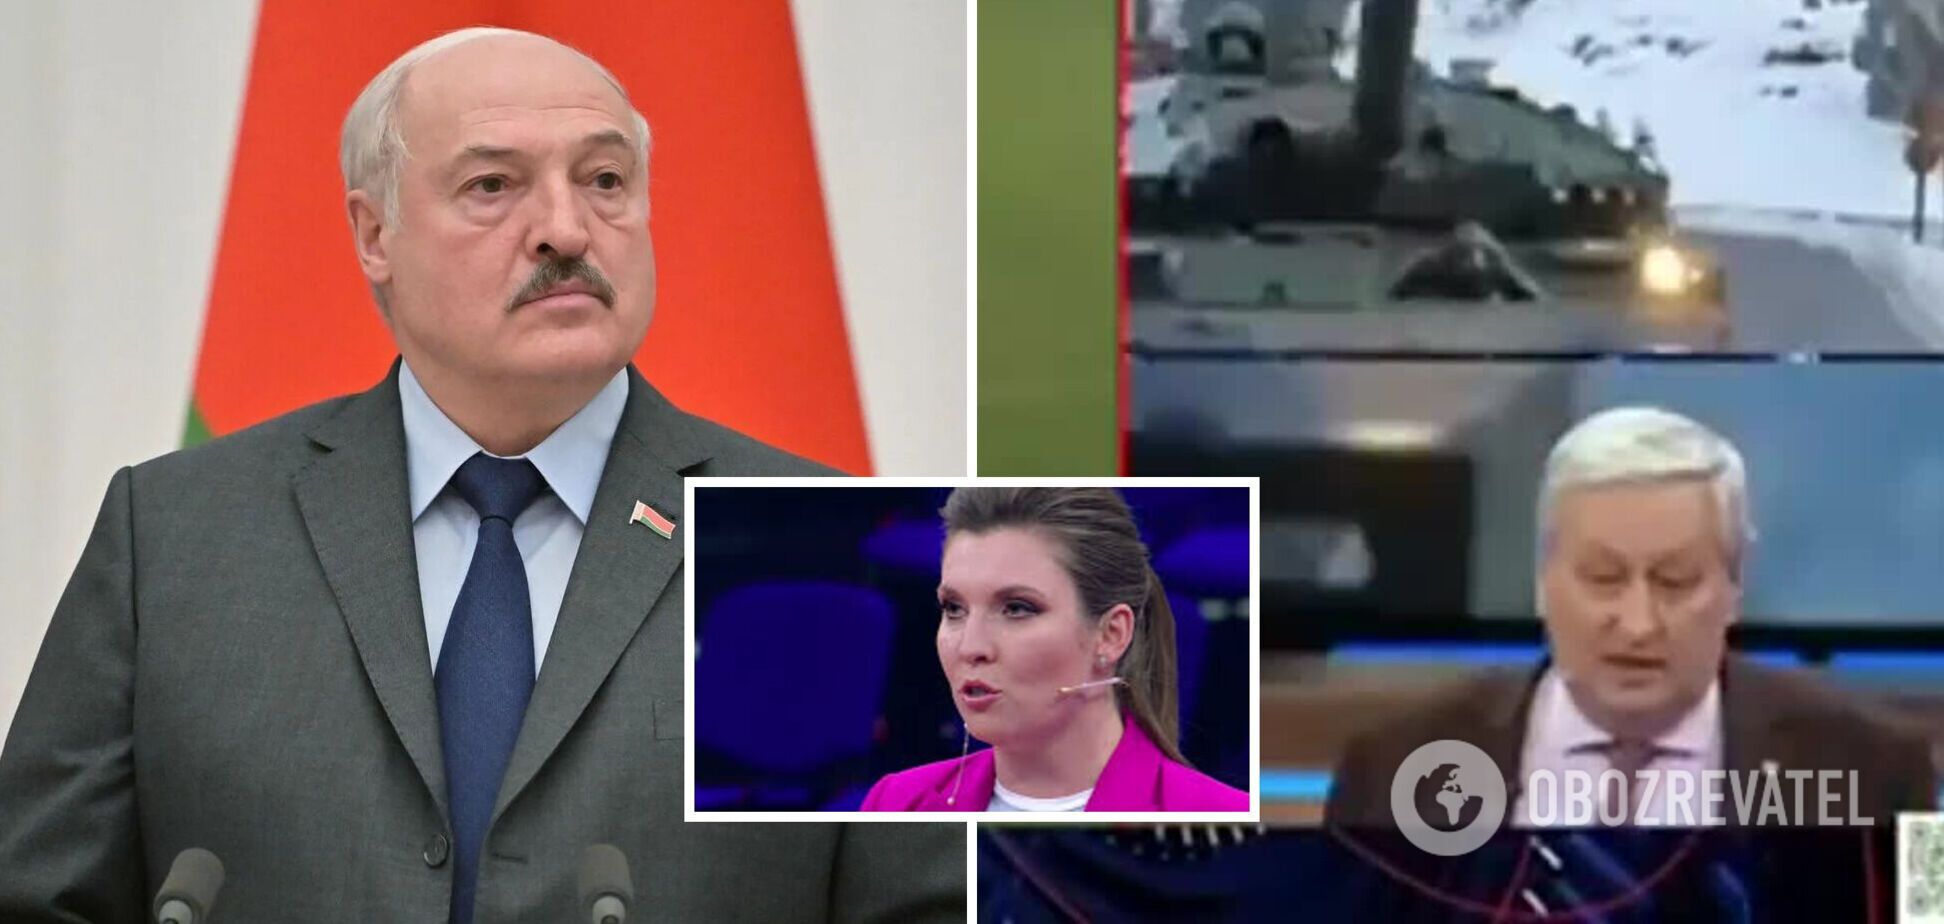 'Не пугайте Лукашенко': на РосТВ назвали Беларусь частью России, пропагандистке Скабеевой пришлось оправдываться. Видео